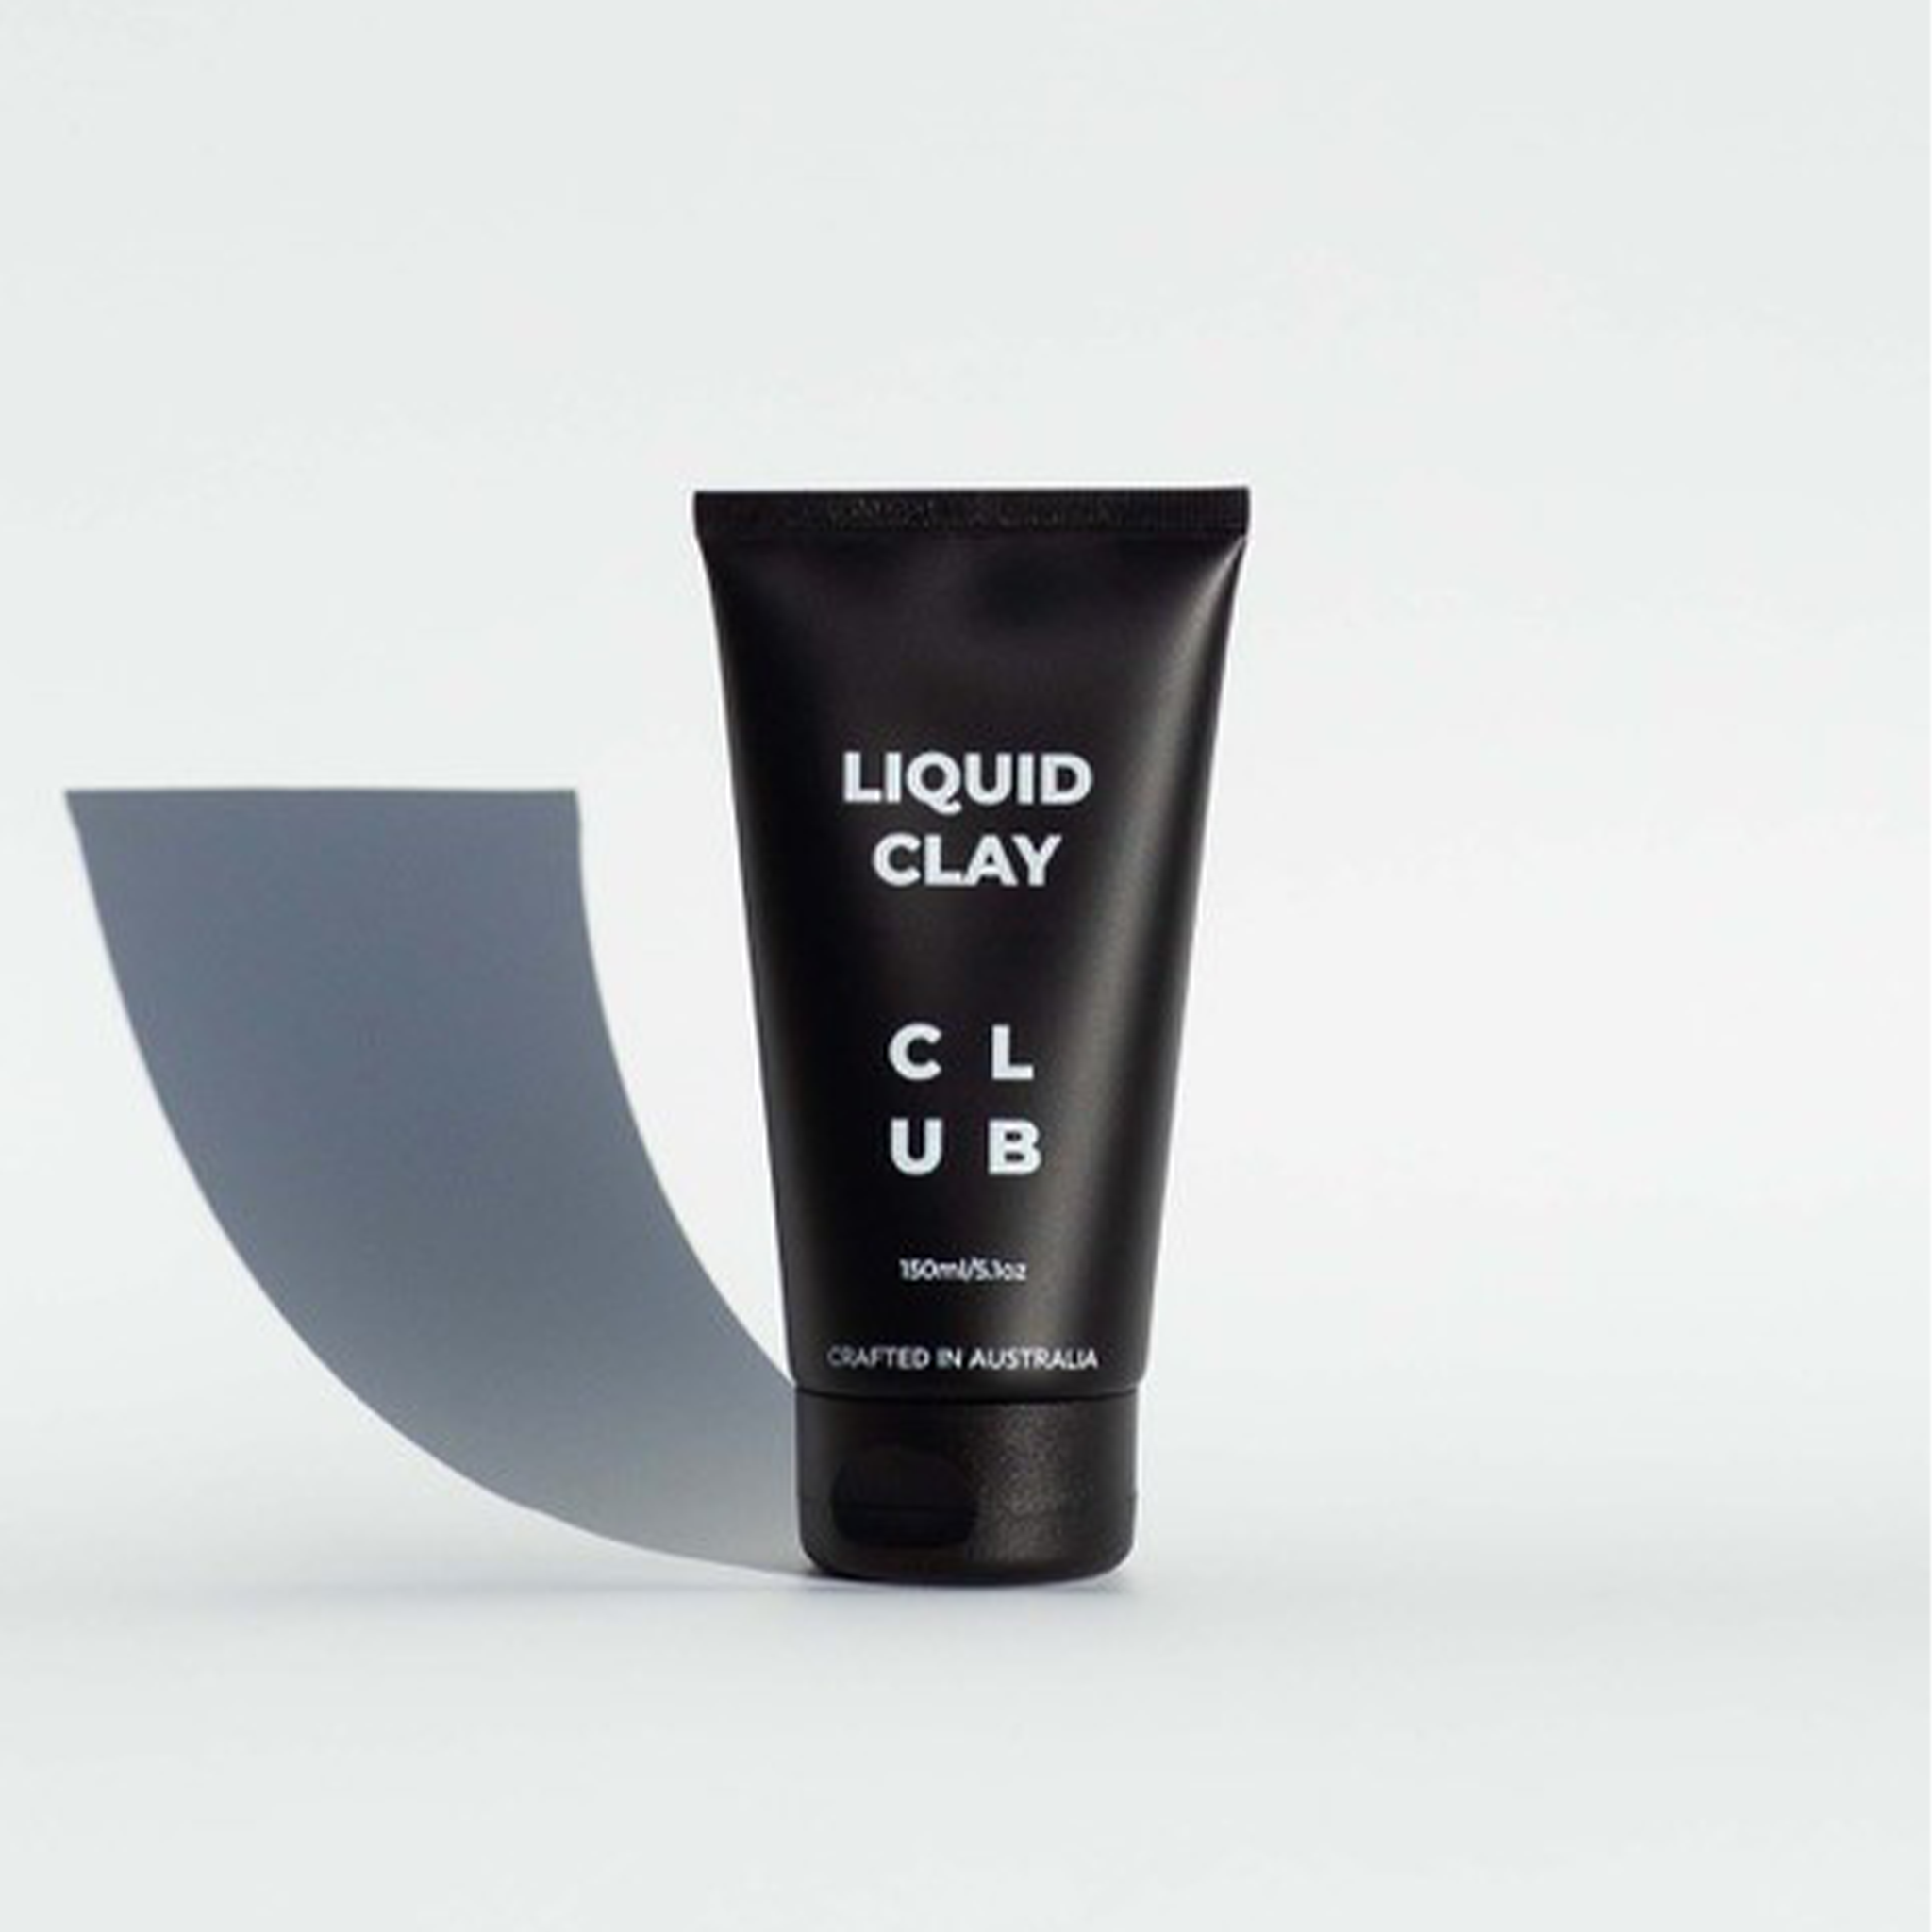 LIQUID CLAY — C L U B products